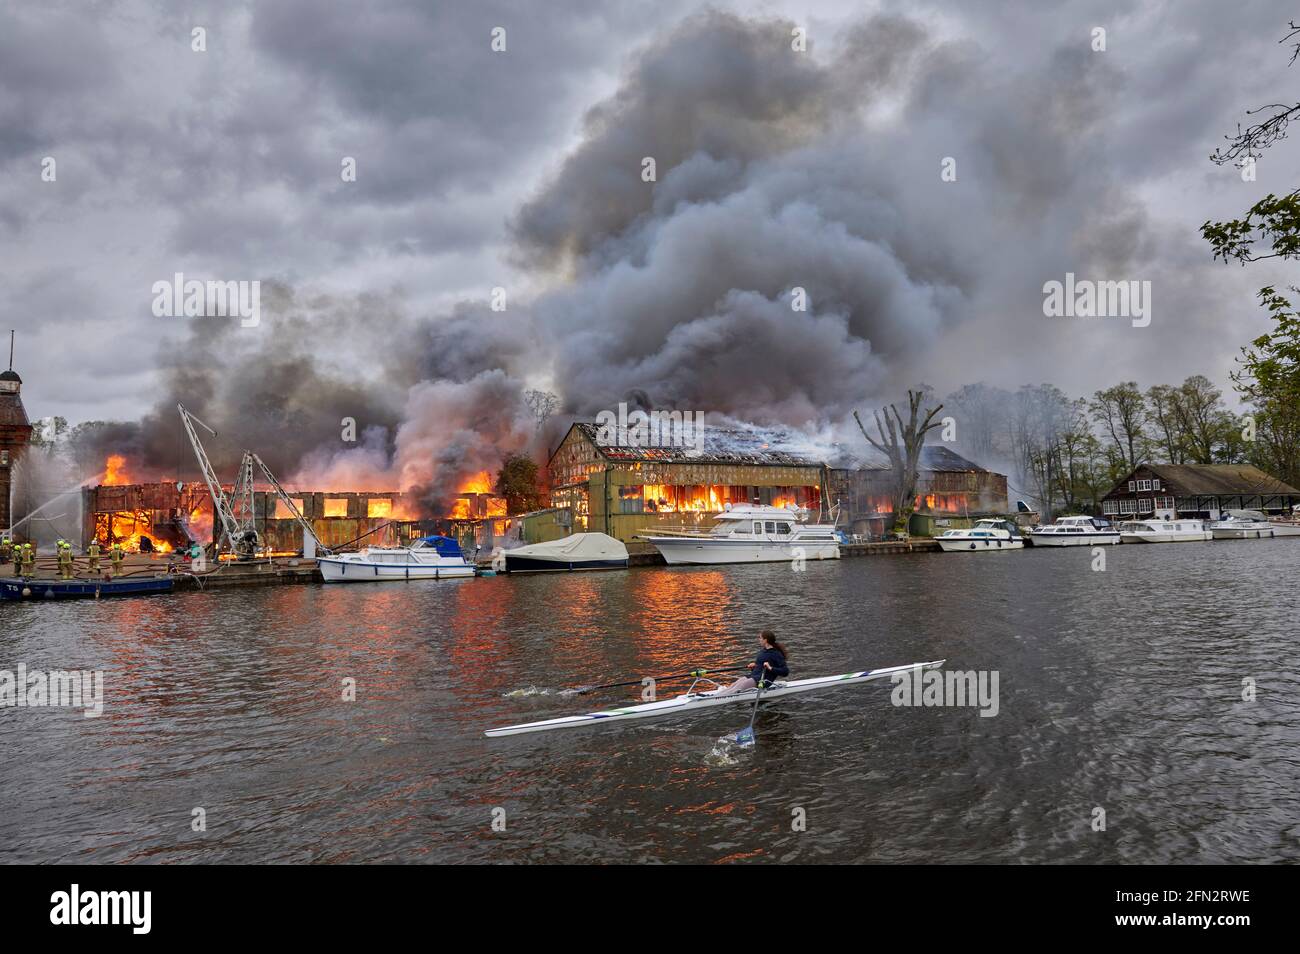 Rameur de l'école secondaire de Wimbledon passant devant le feu d'Eyot de Platt Du 3 mai 2021 qui a détruit le hangar à bateaux de Otter Marine et l'évacuation de Dunkirk Banque D'Images